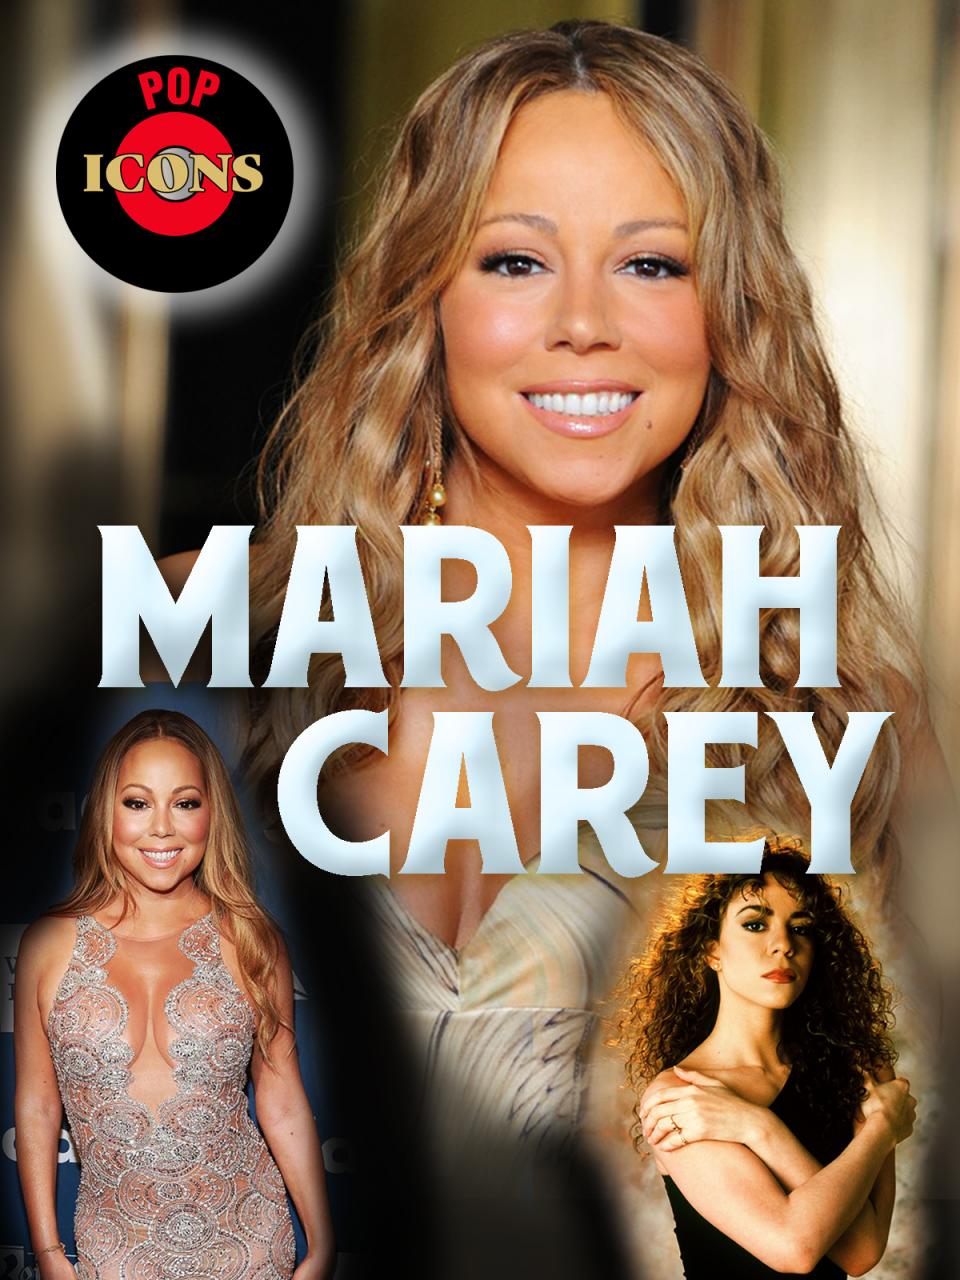 Pop Icons: Mariah Carey